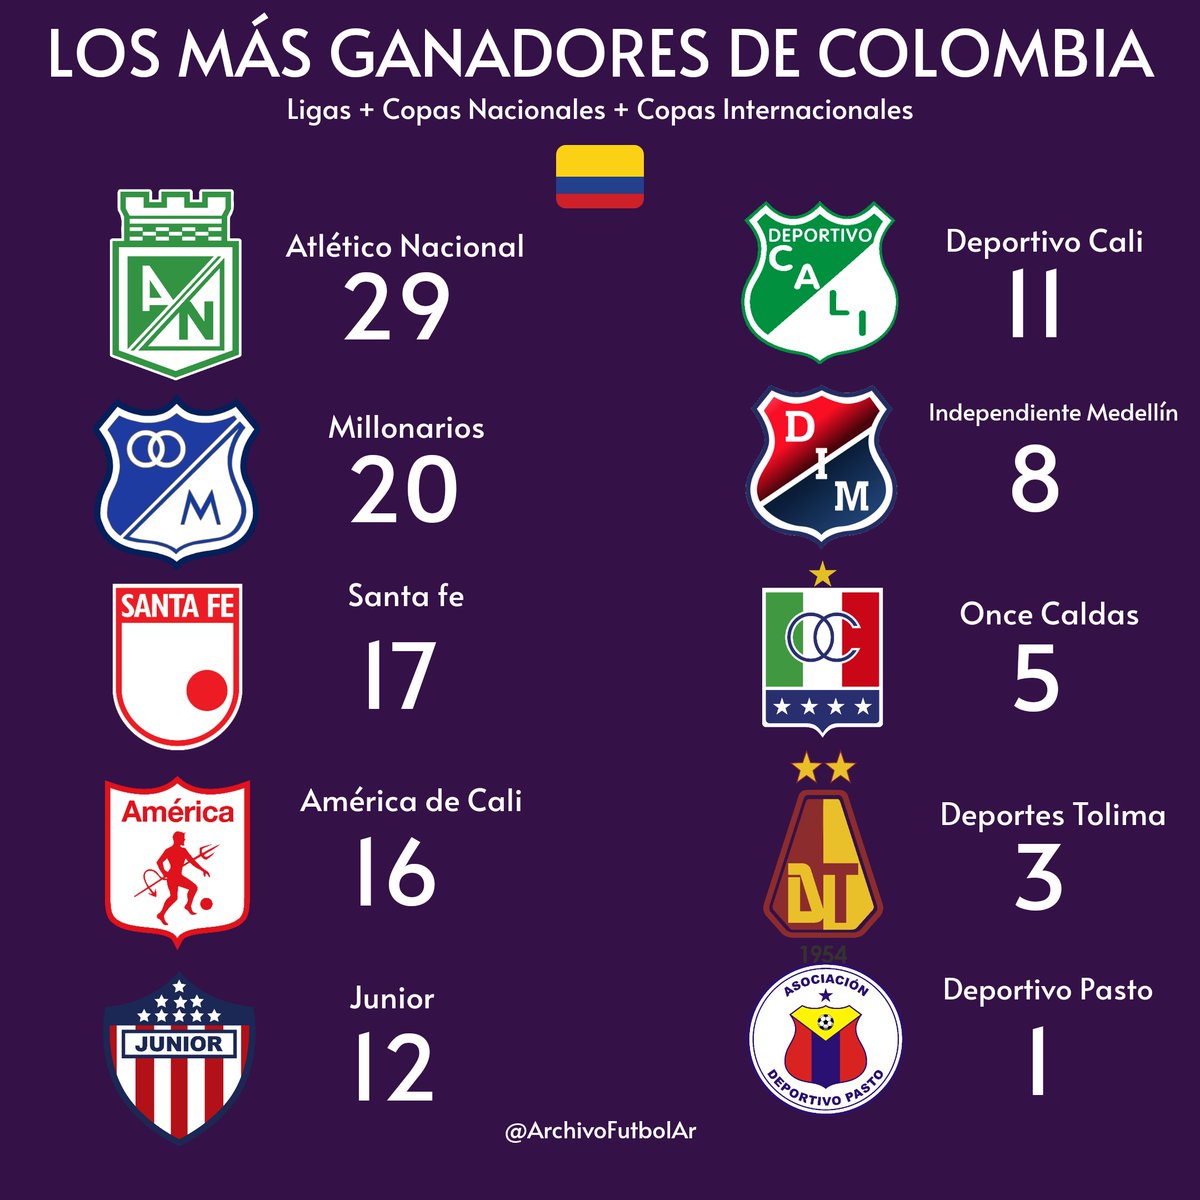 ¿Cuál es el equipo más grande de Colombia